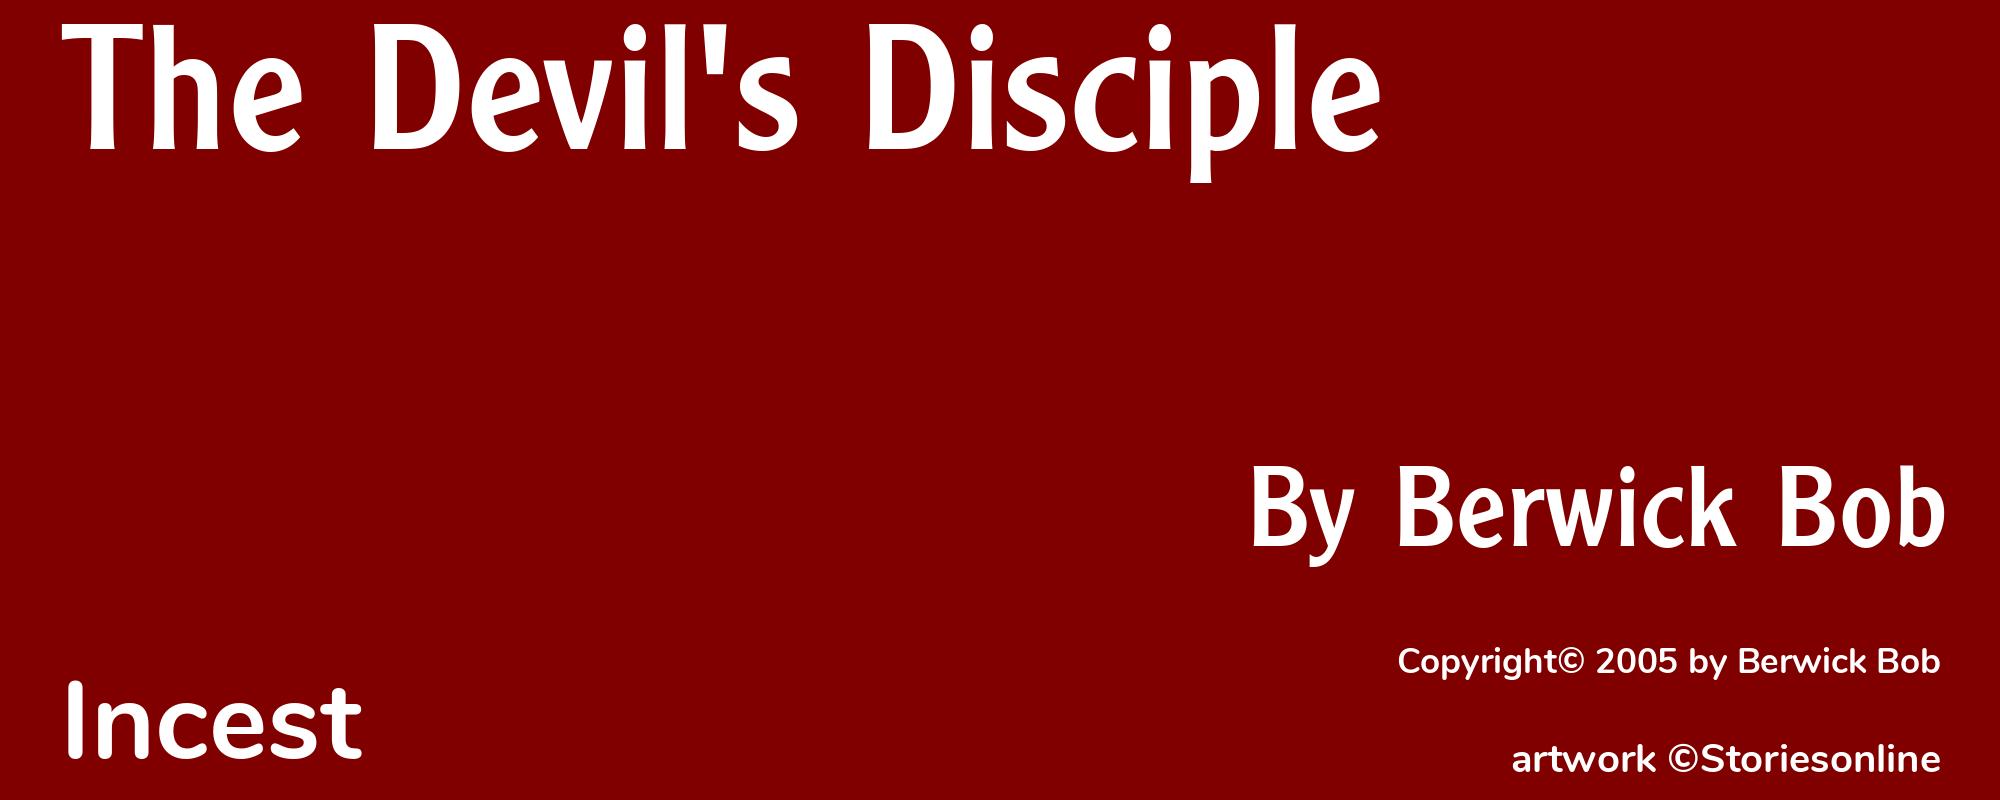 The Devil's Disciple - Cover